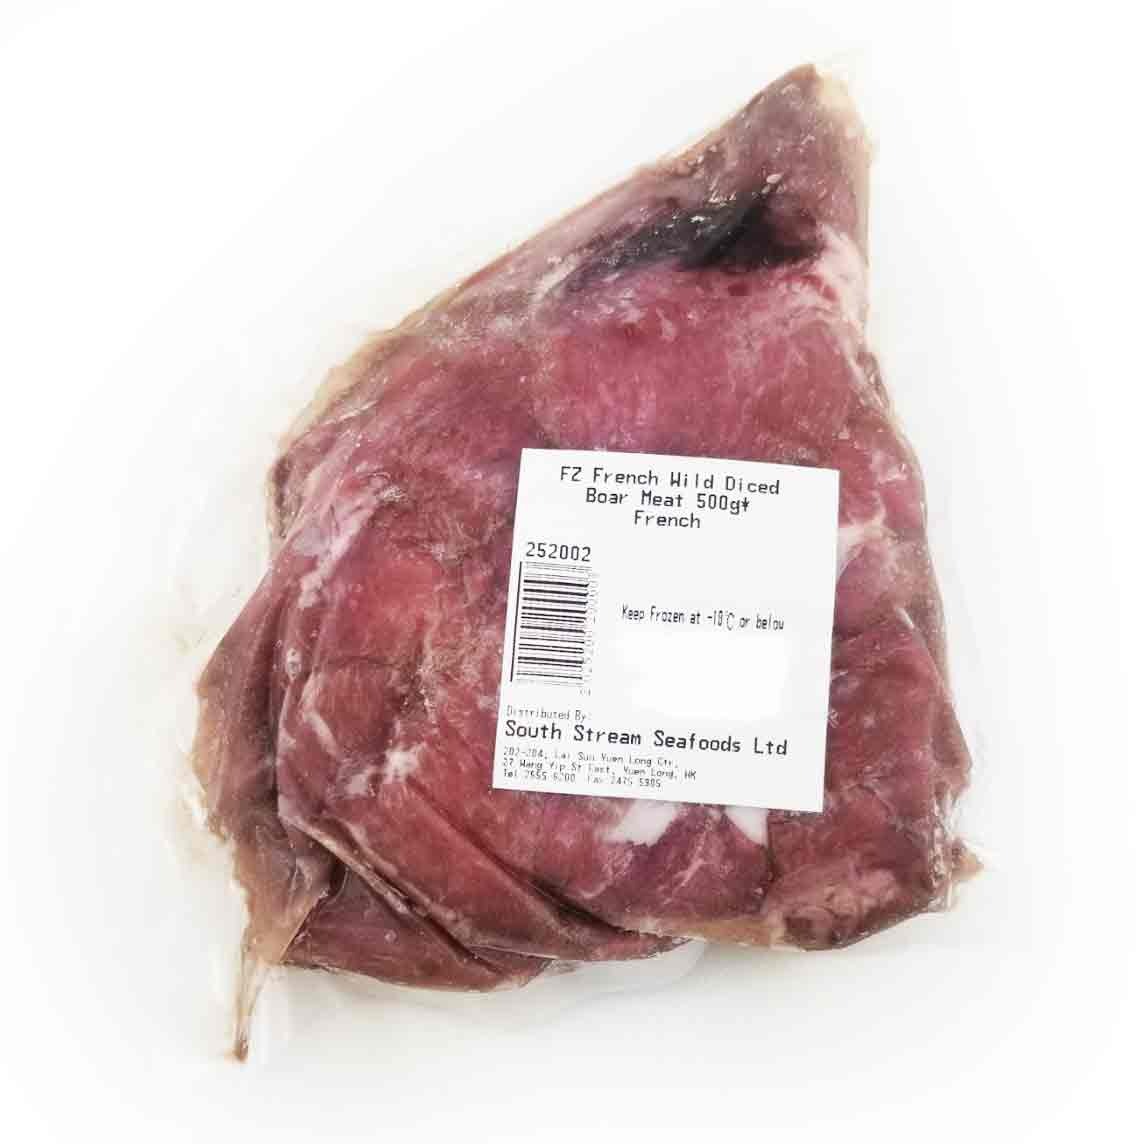 Frozen French Wild Diced Boar Meat 500g*